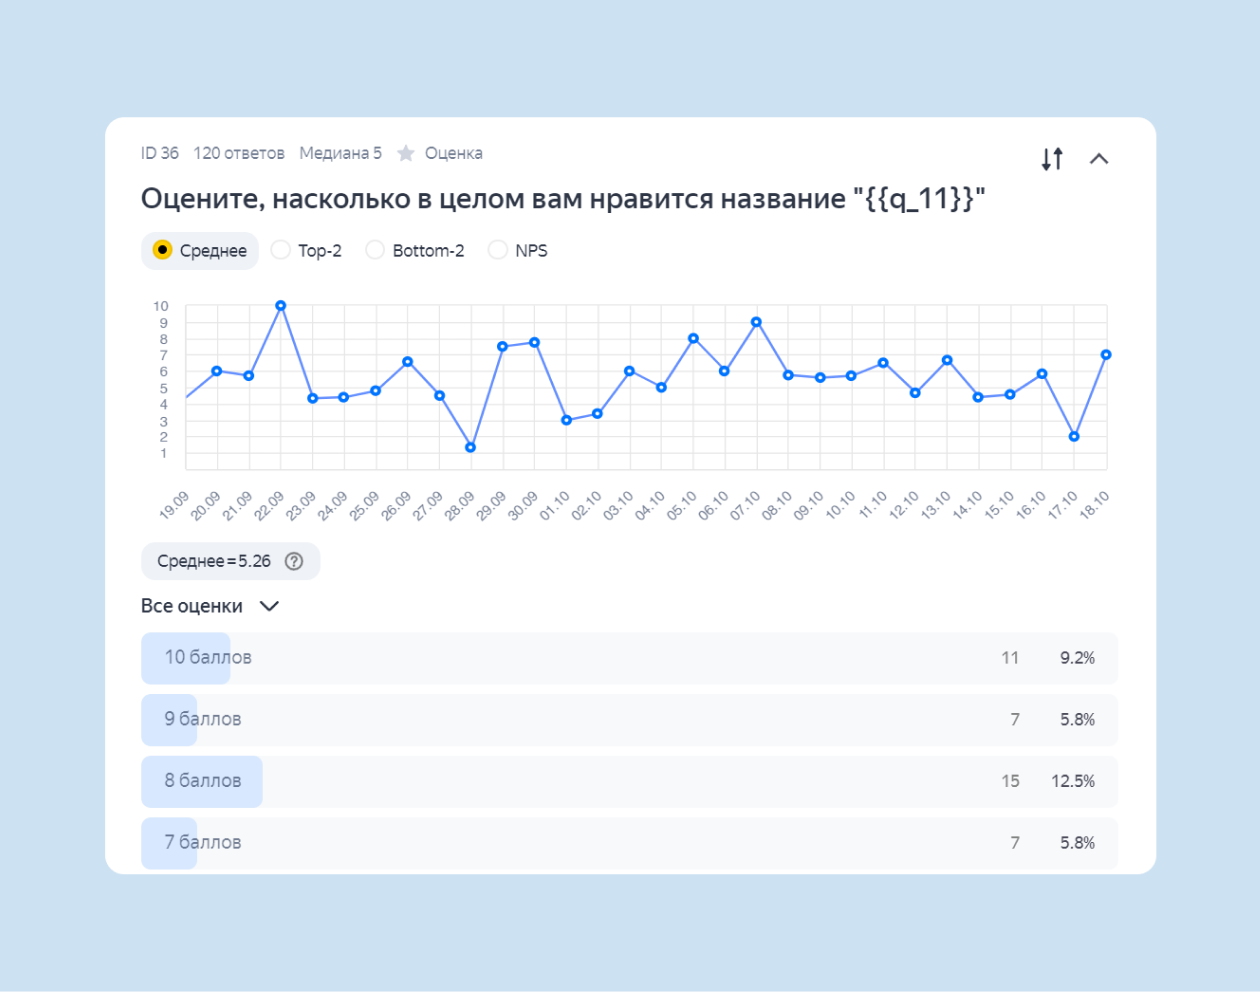 Статистика по ответам в Яндекс Взгляде